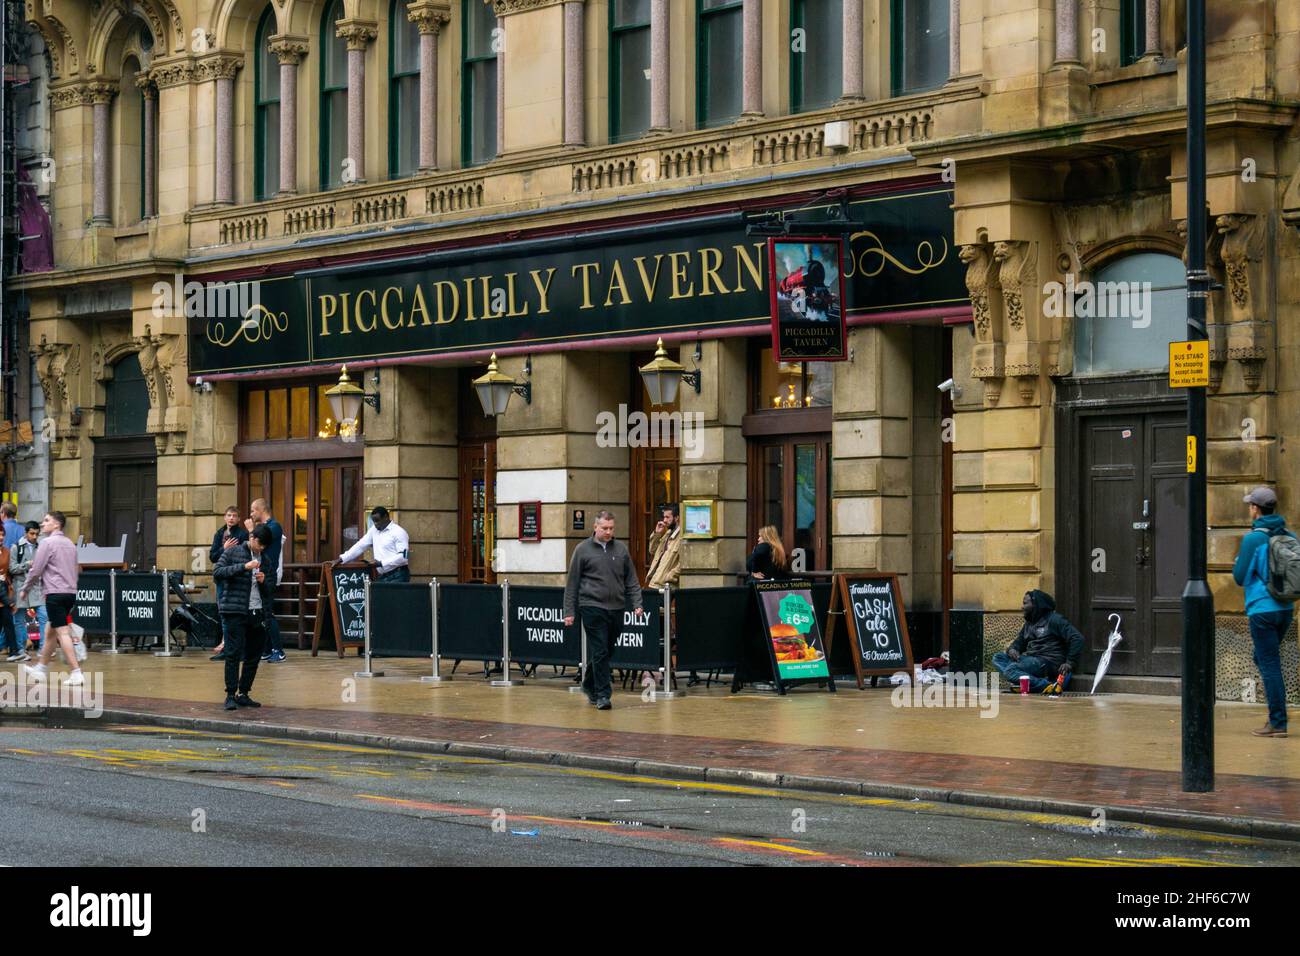 Manchester, Großbritannien - 22nd. September 2019: Piccadilly Tavern Public House, eine beliebte Bar und ein Restaurant, das Studenten und Einheimischen Alkohol und Pub-Essen serviert Stockfoto